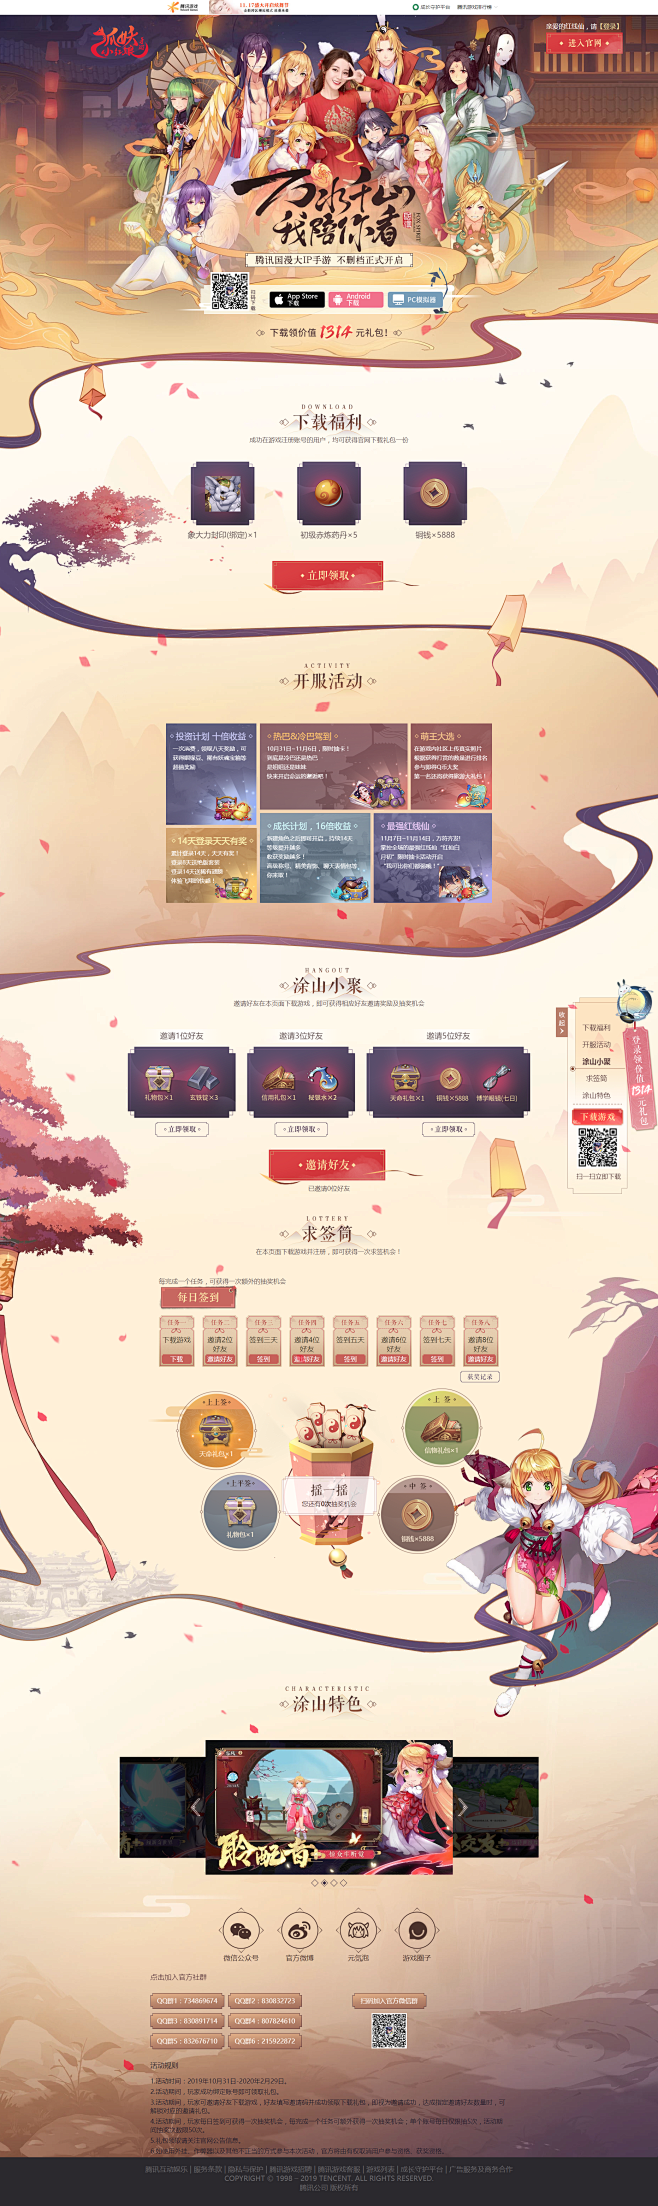 下载站-狐妖小红娘手游官方网站-腾讯游戏